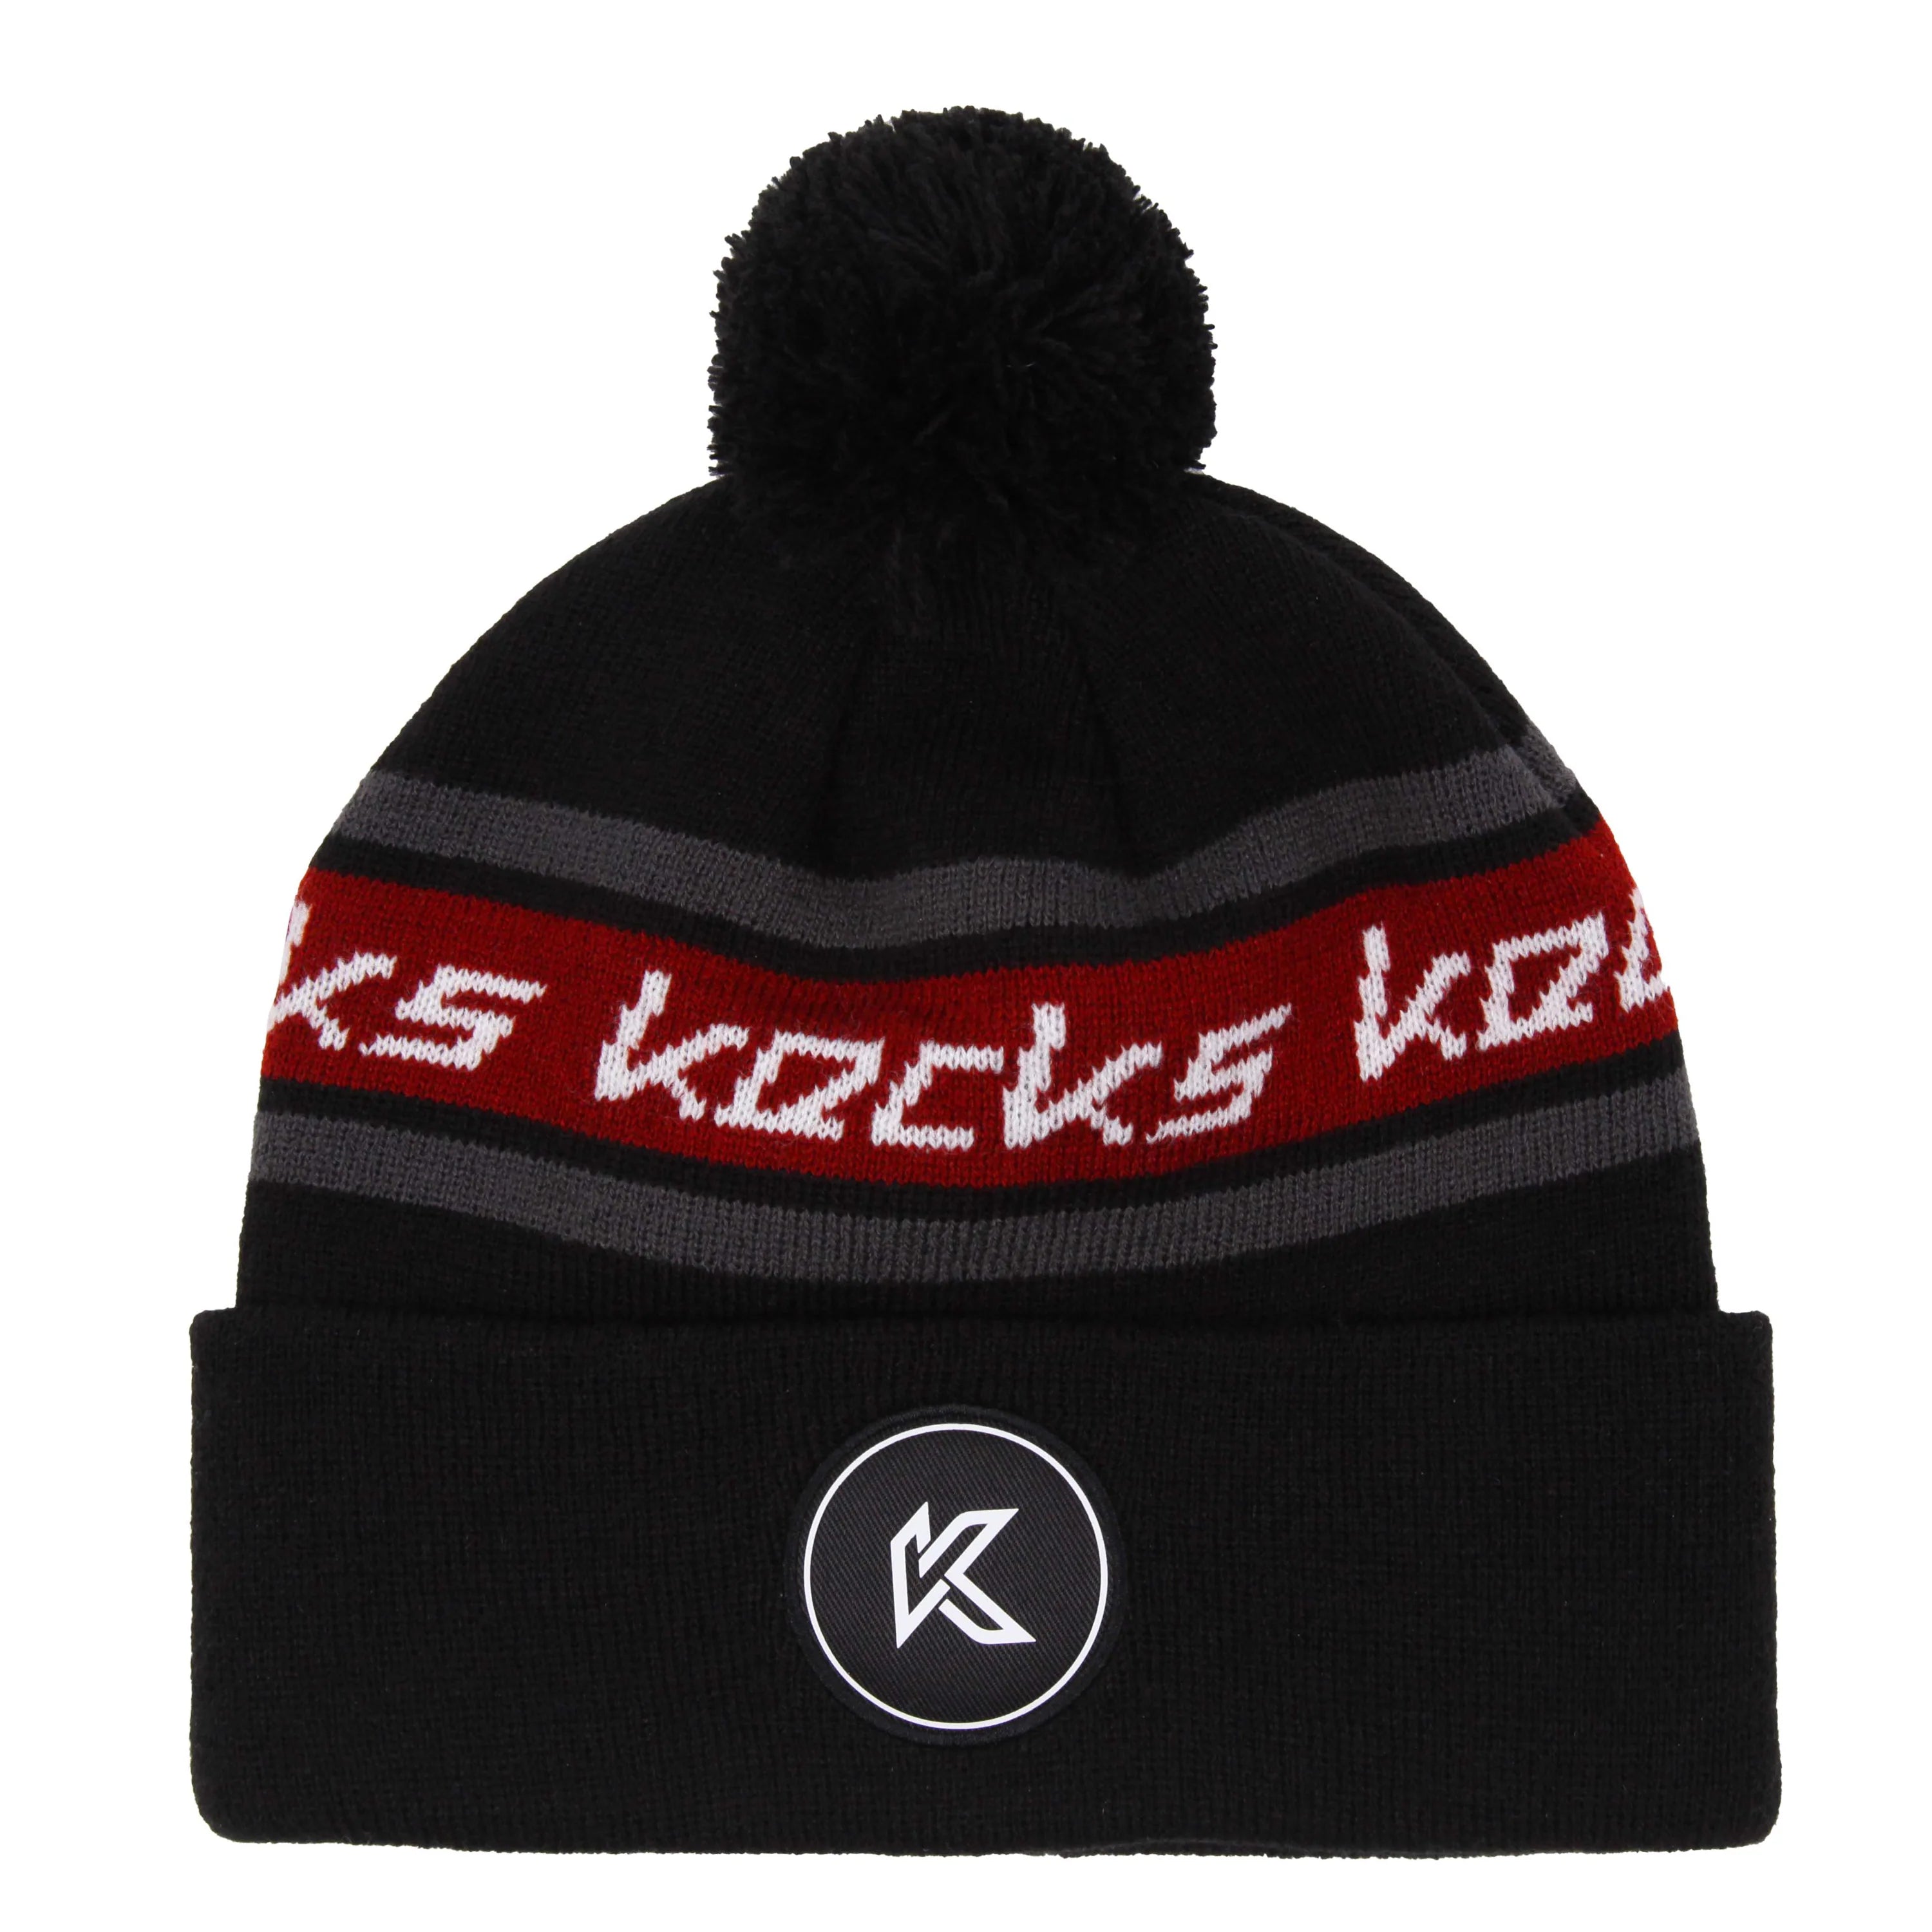 Kecks Bobble Hat Black